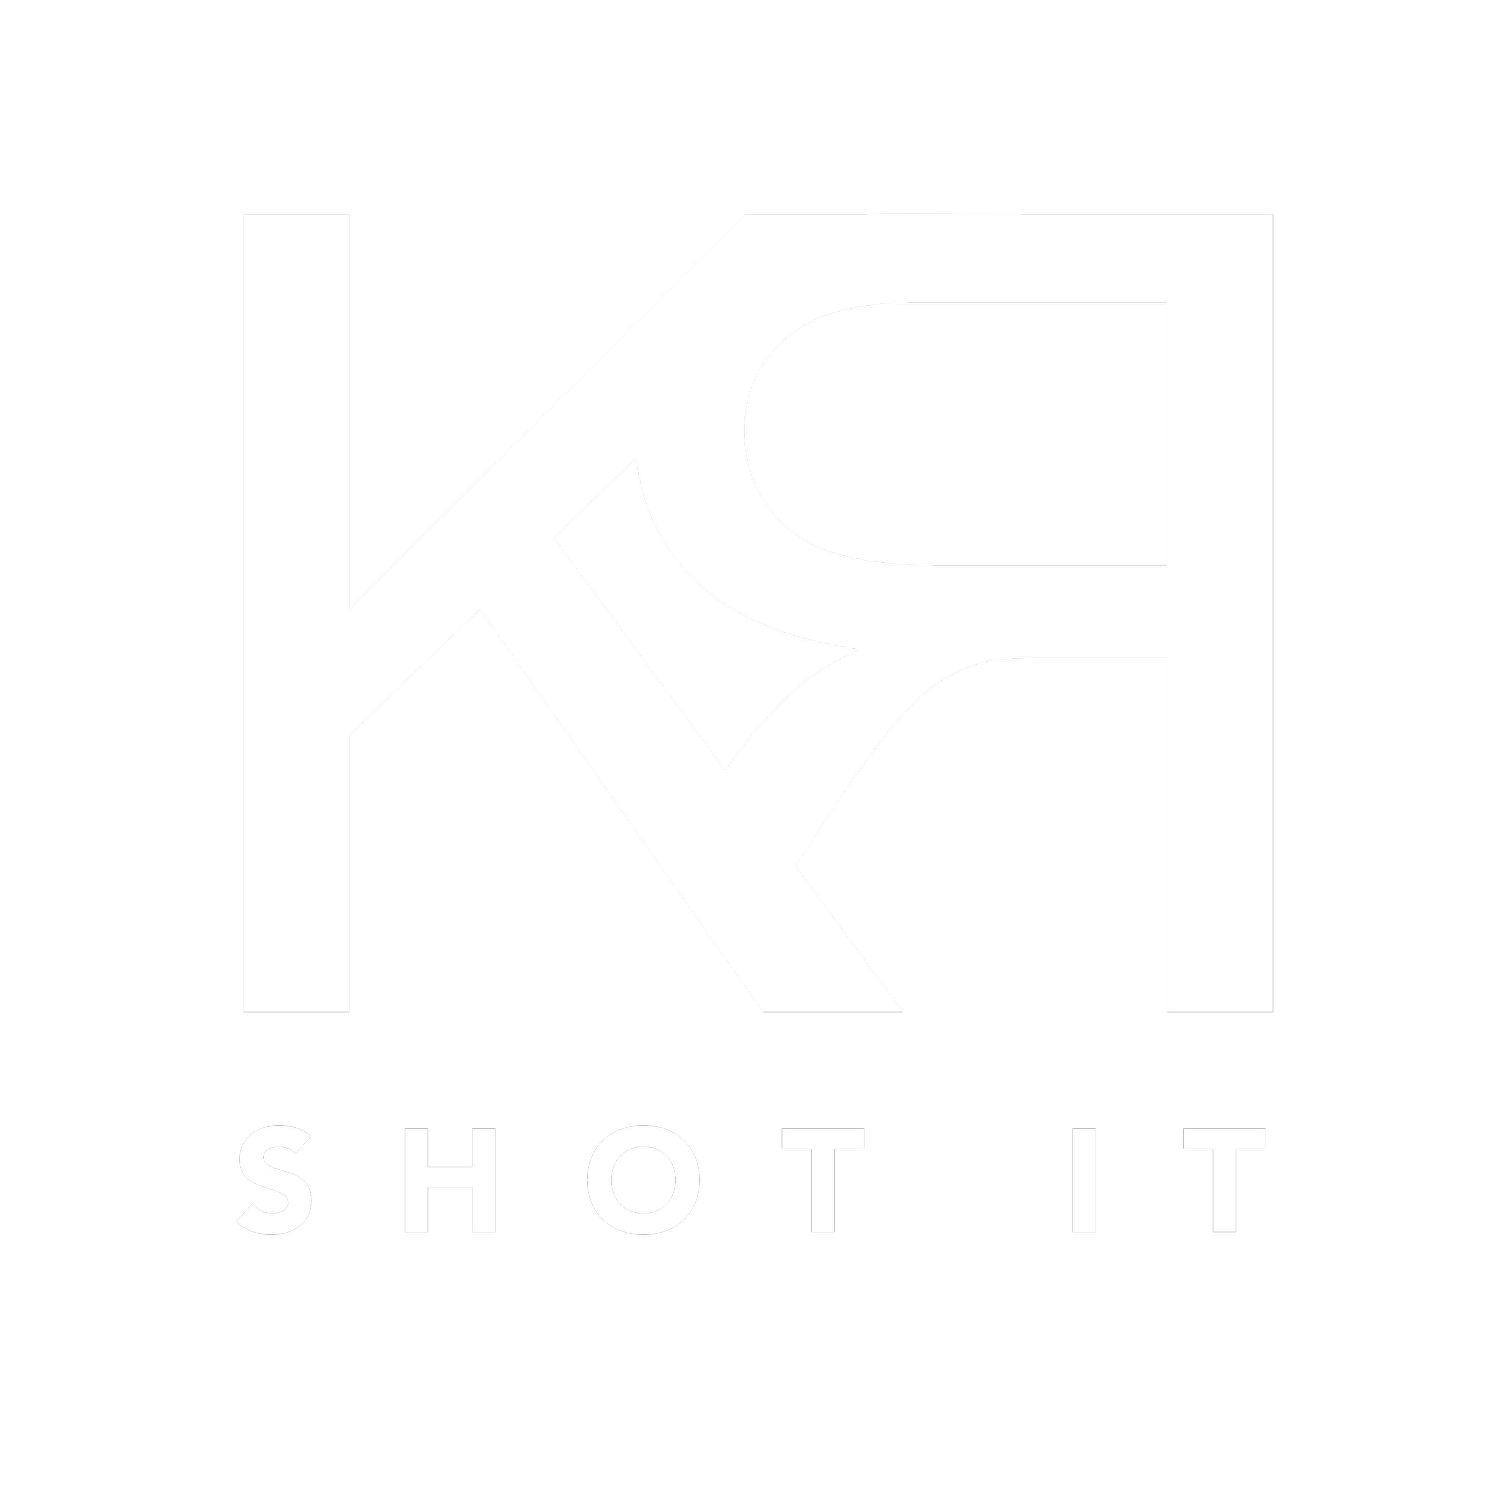 KR Shot It